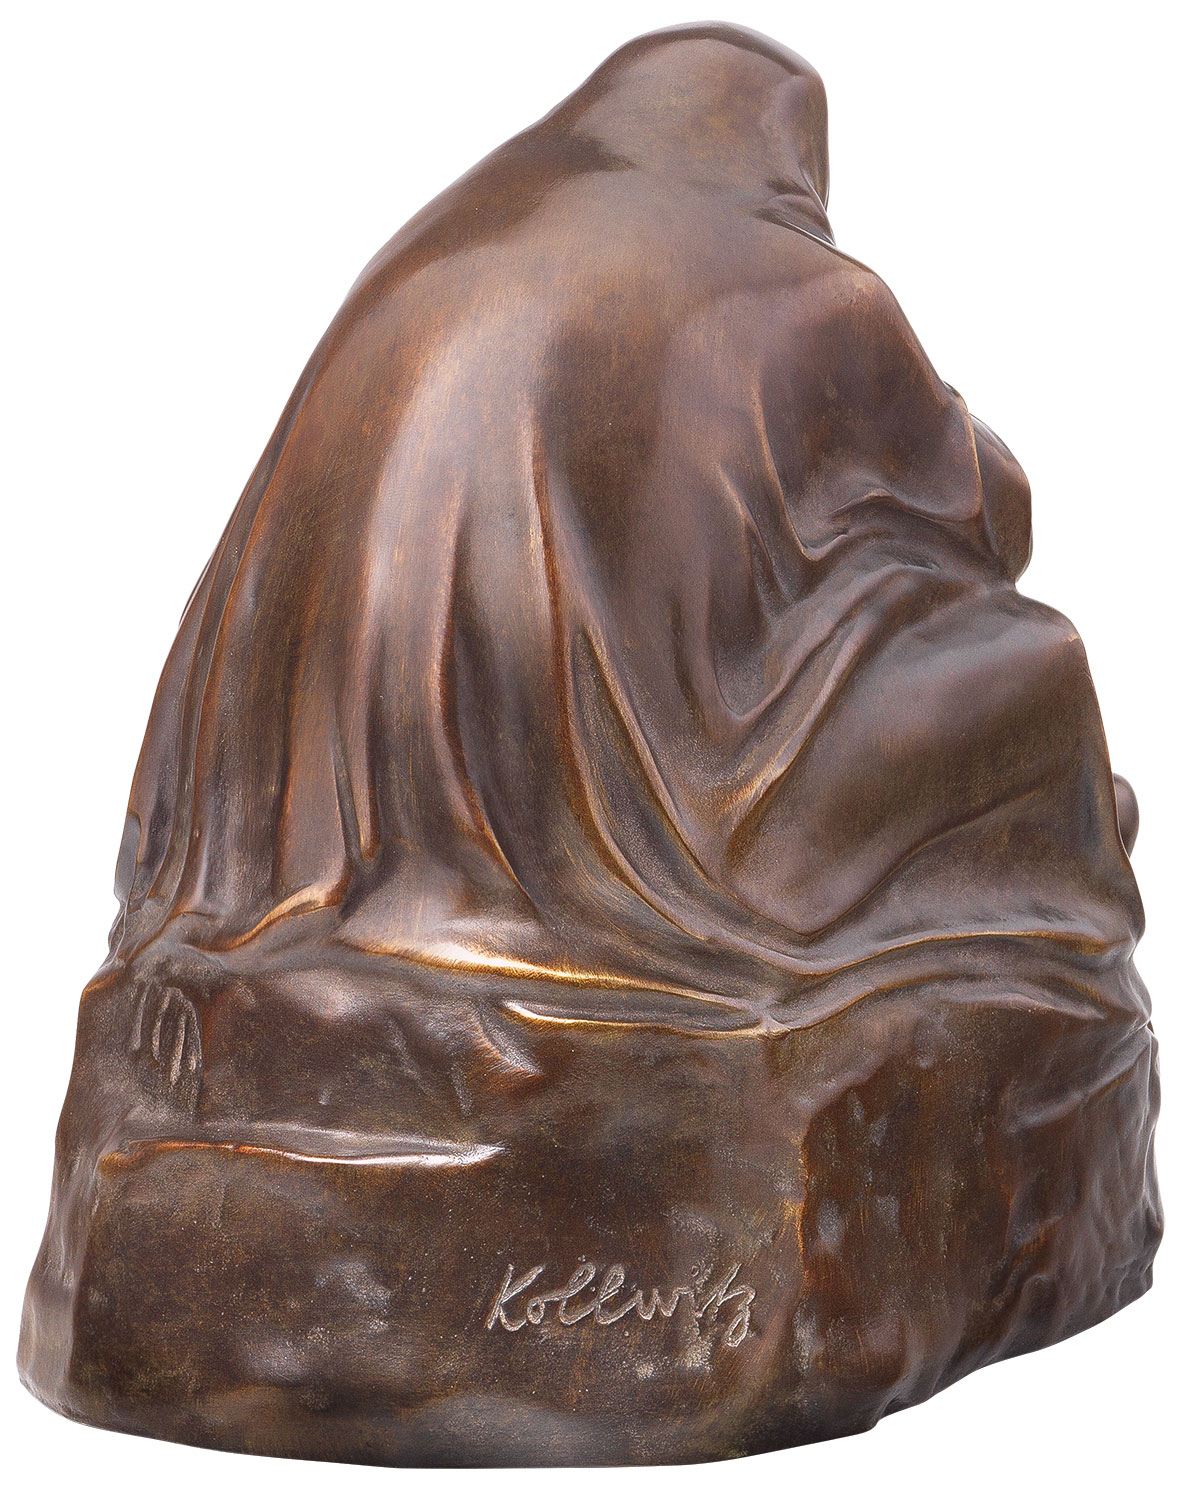 Skulptur "Pietà" (1938/39), Reduktion in Bronze von Käthe Kollwitz